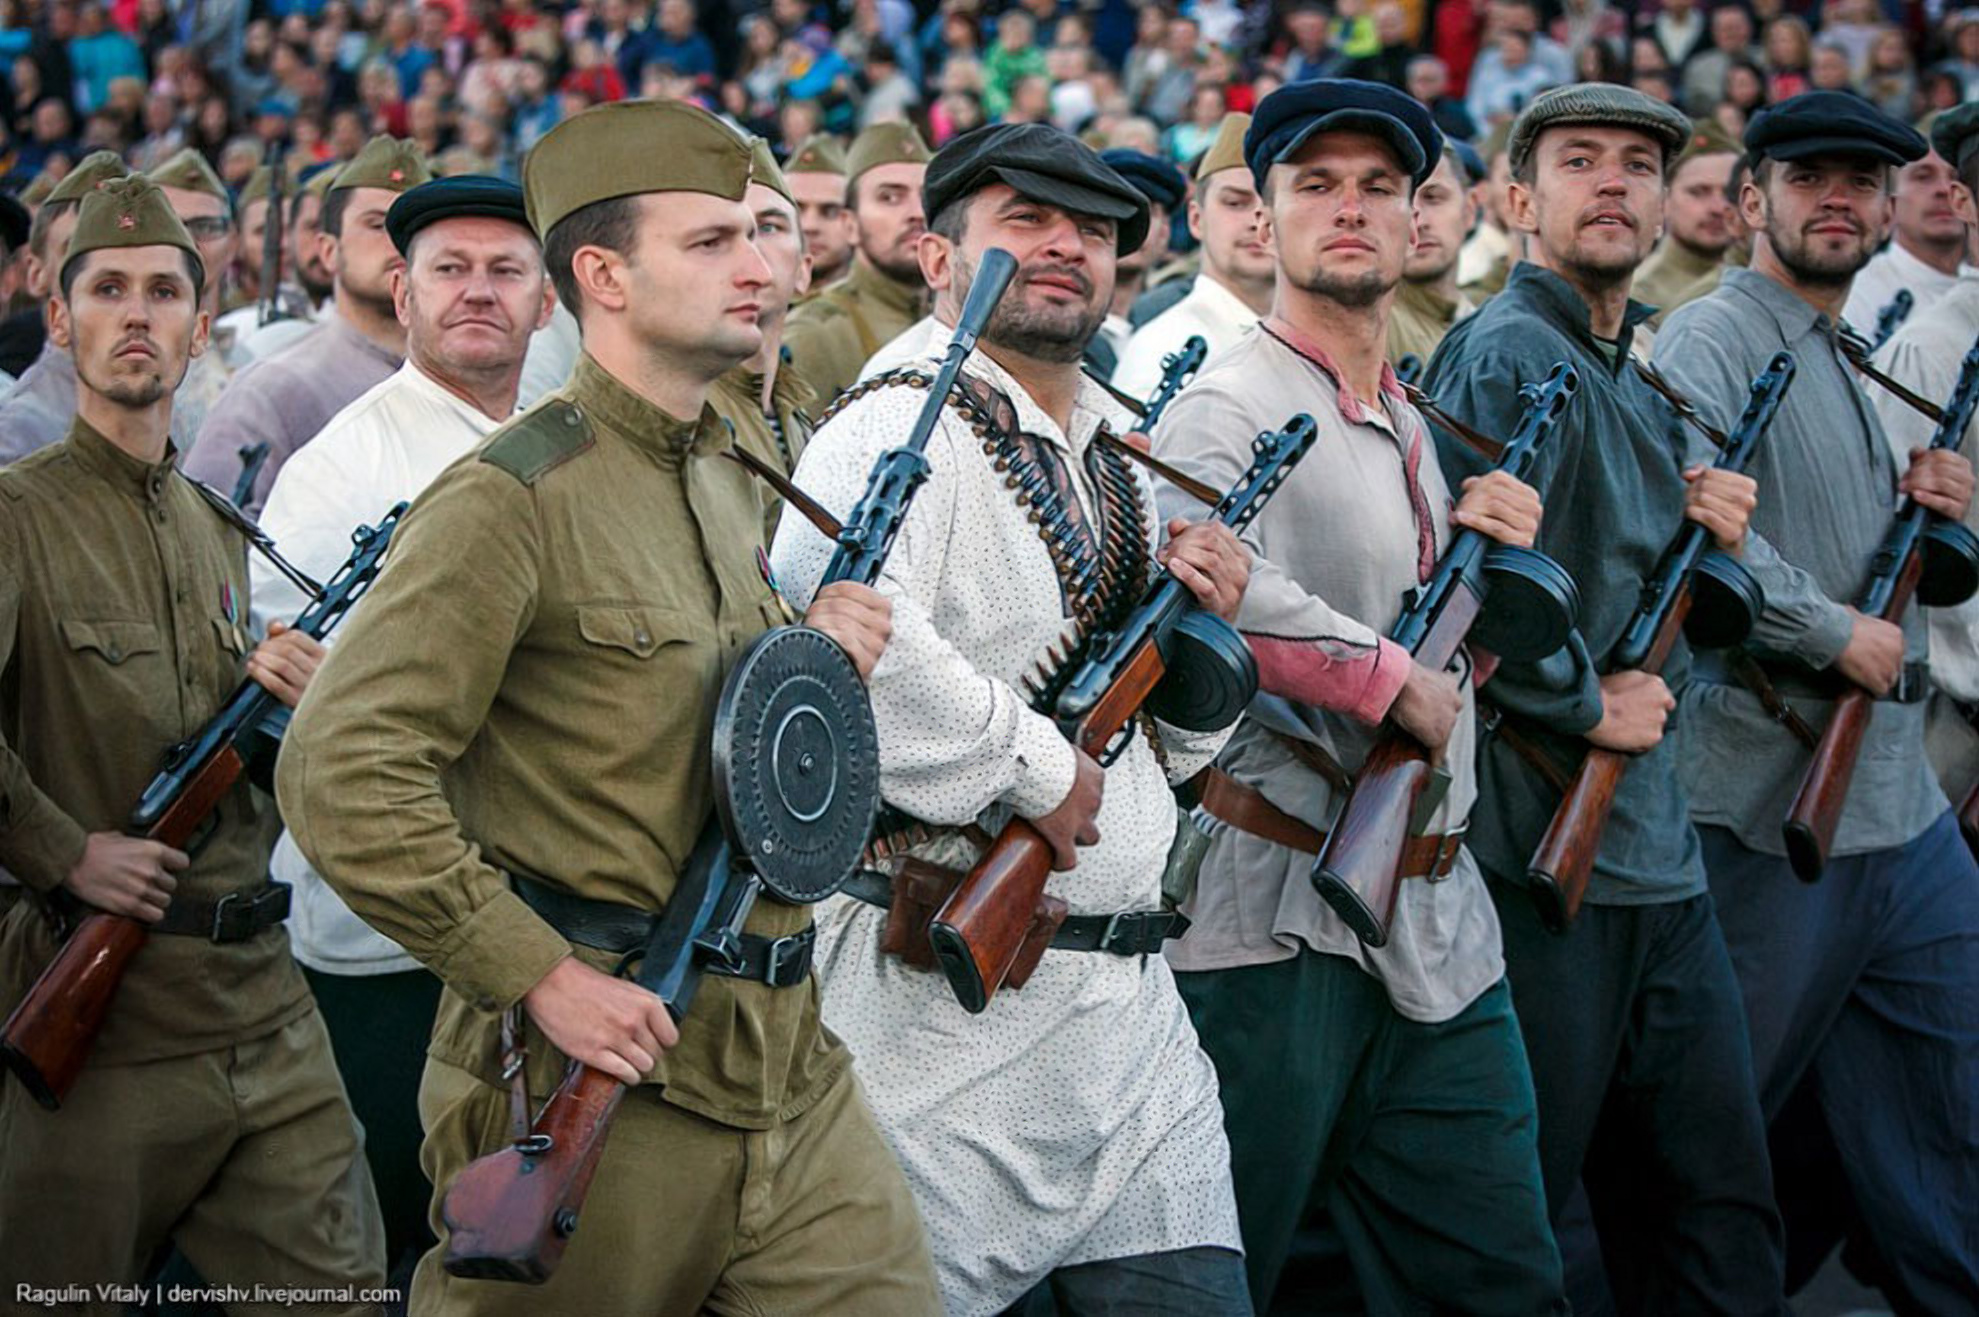 Внуки и правнуки белорусских партизан, возможно со своим оружием